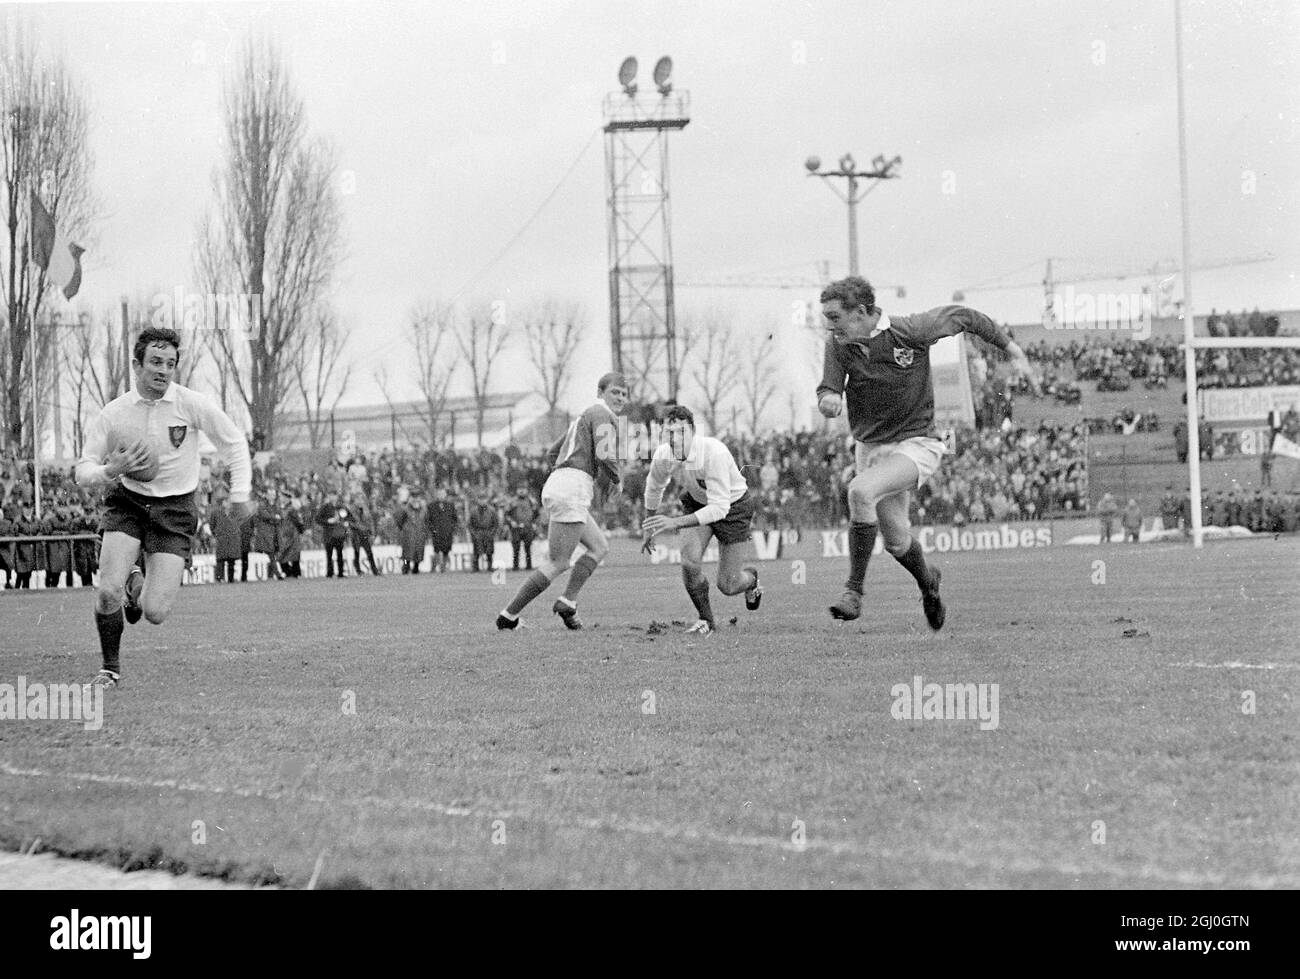 Der Franzose Pierre Villepreux (links) läuft mit Ball, Teamkollege Christian Carrere (Mitte) bereitet sich darauf vor, ihn während der Five Nations Rugby Union International in Paris vom irischen Spieler (rechts) zu retten. 29. Januar 1968 Stockfoto